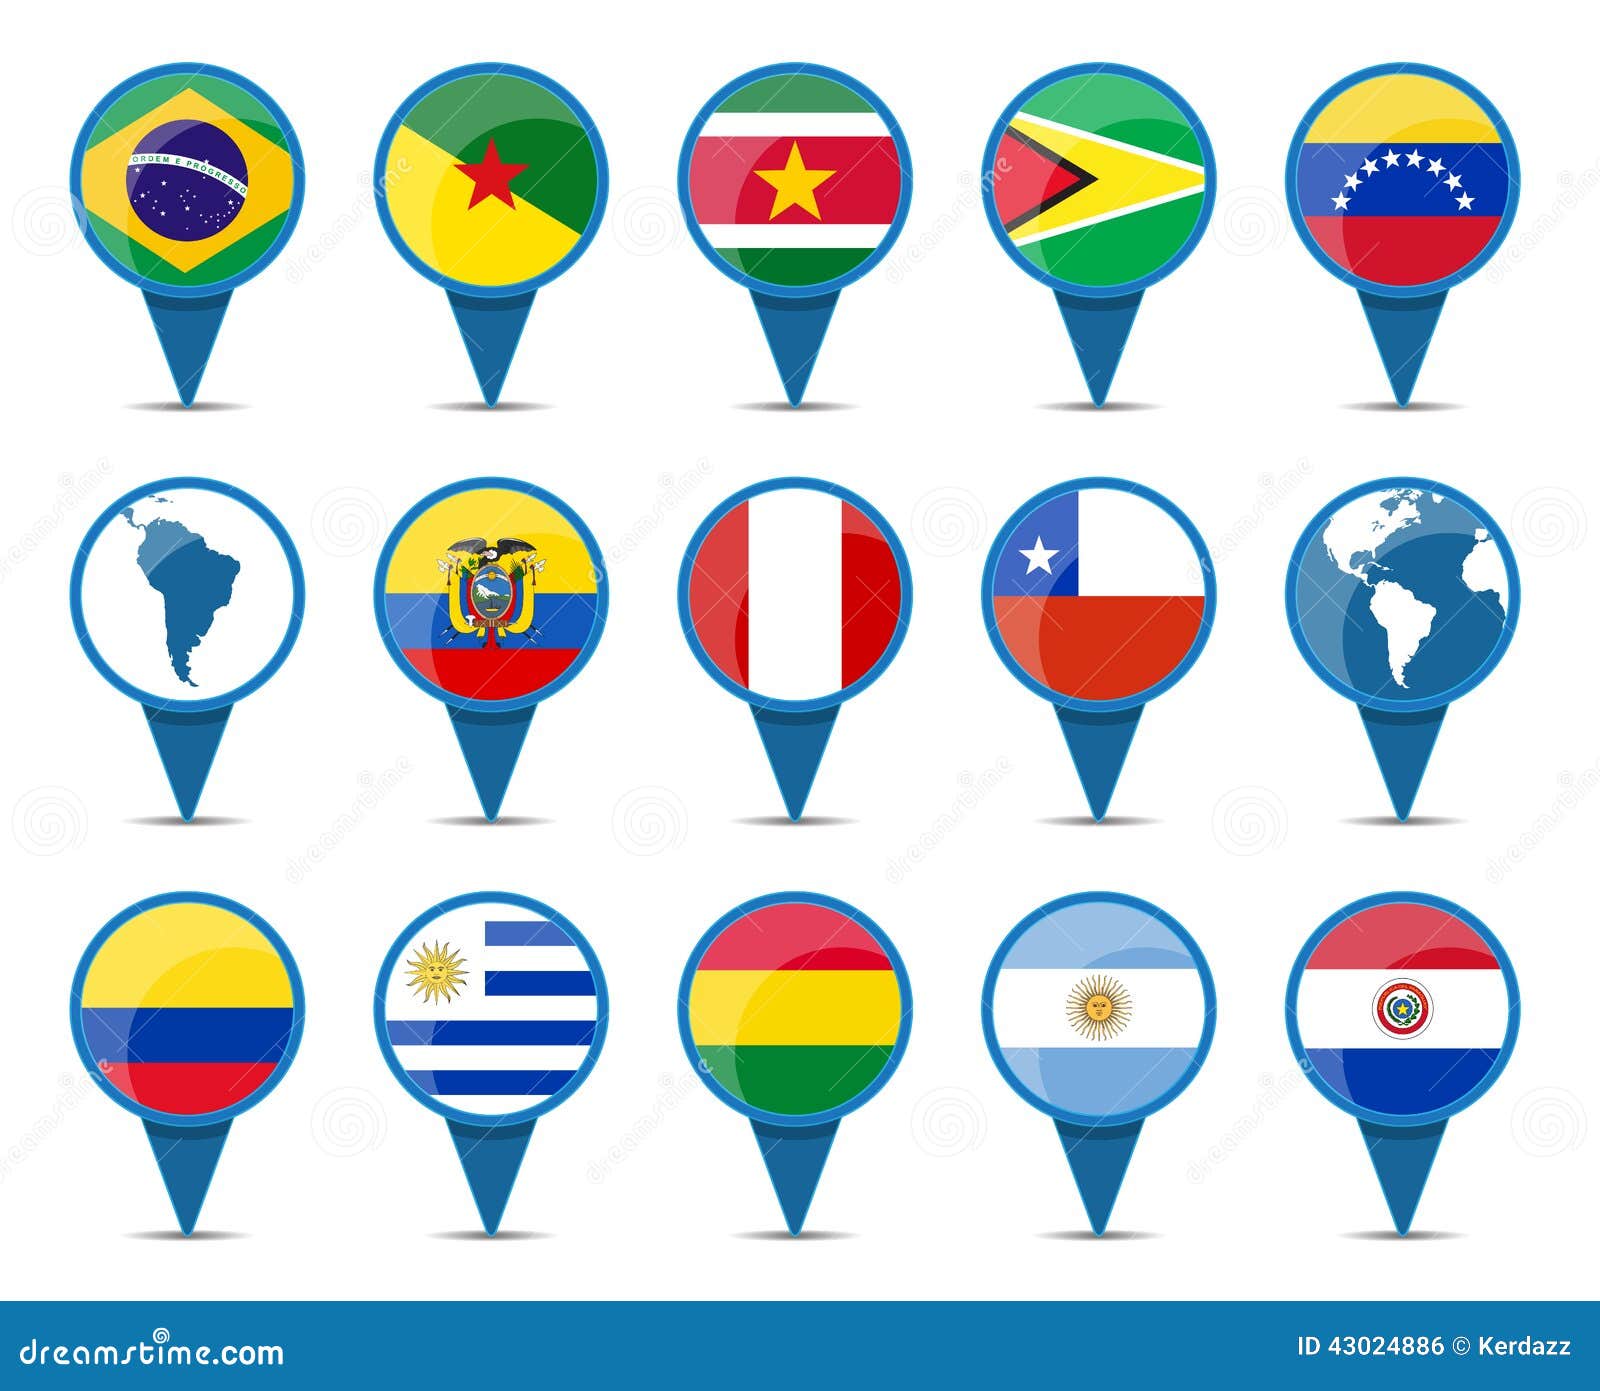 南美国旗向量例证 插画包括有秘鲁 图象 流星锤 法国 映射 委内瑞拉 按钮 厄瓜多尔